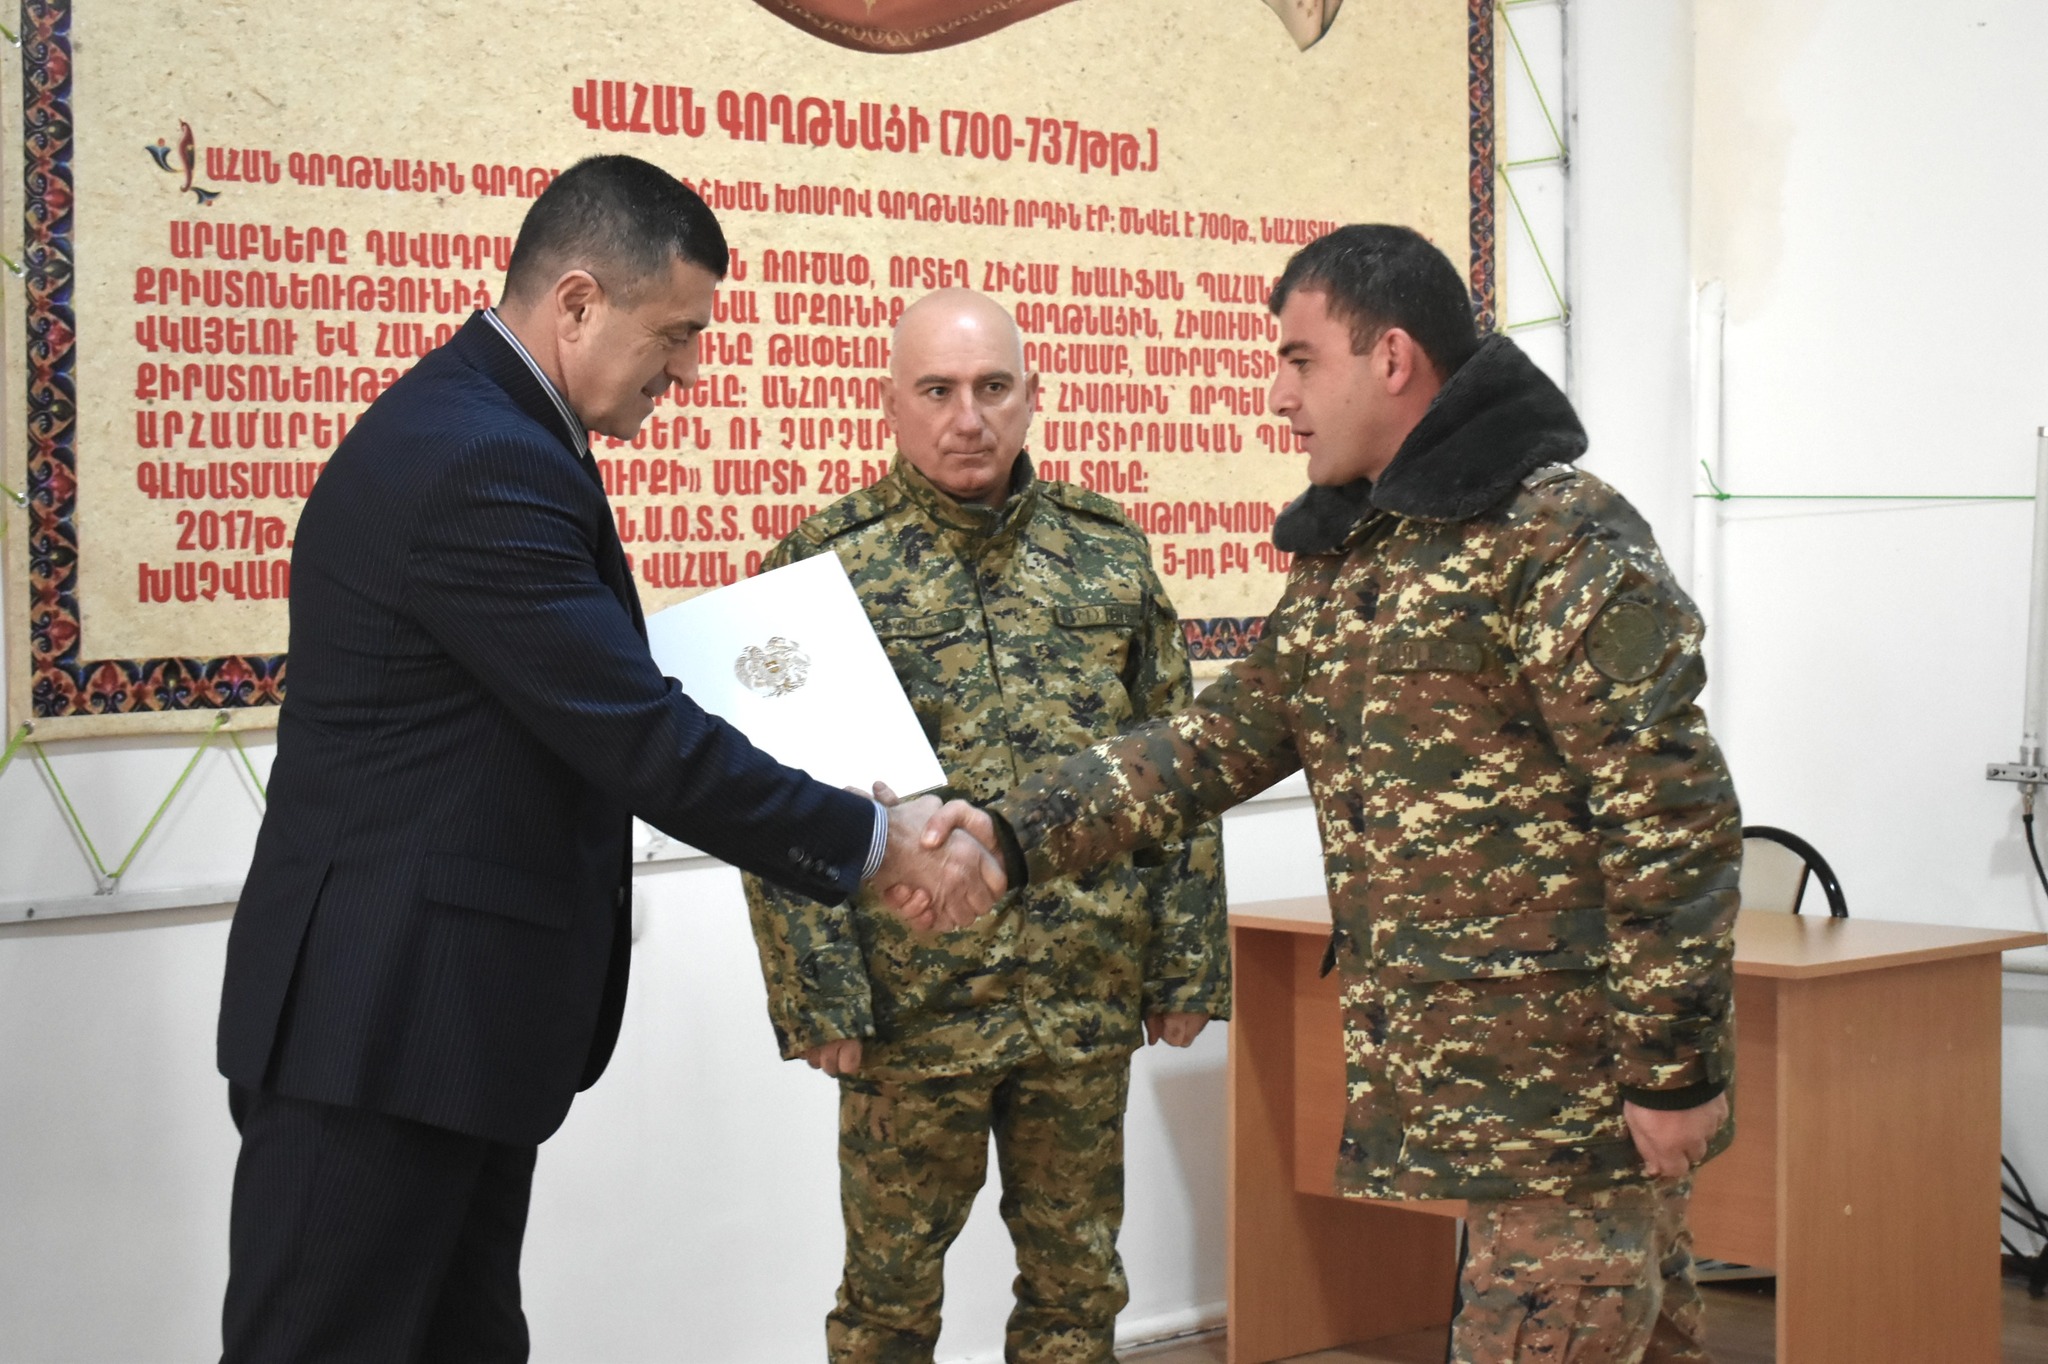 Վայոց ձորի մարզպետի կողմից հայրենիքի պաշտպանության ու անվտանգության գործում ցուցաբերած մեծ նվիրումի համար մի շարք զինվորականներ արժանացել են շնորհակալագրերի